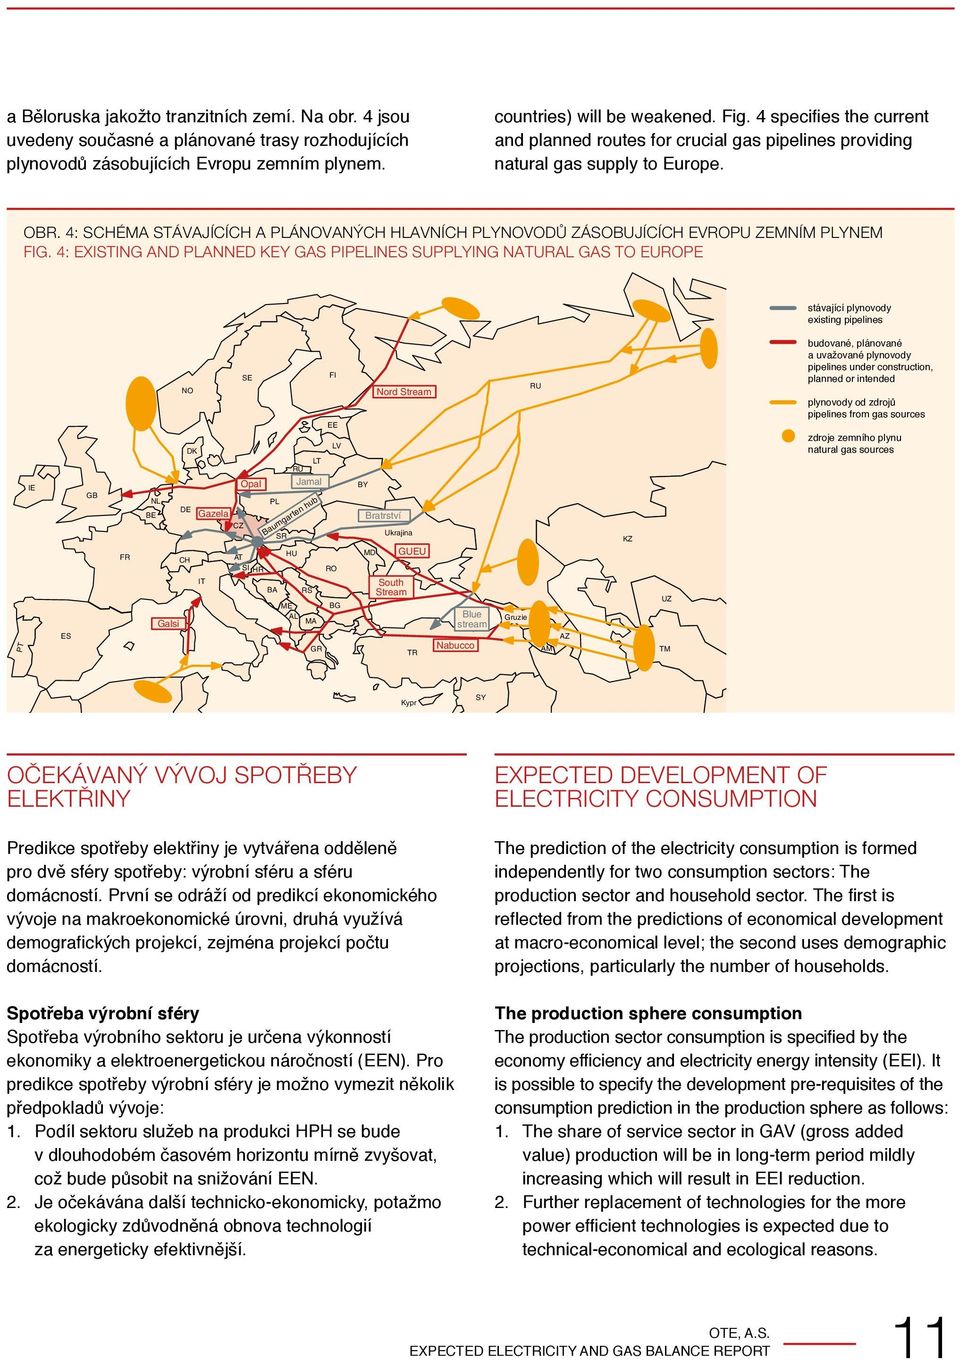 4: Schéma stávajících a plánovaných hlavních plynovodů zásobujících Evropu zemním plynem Fig.